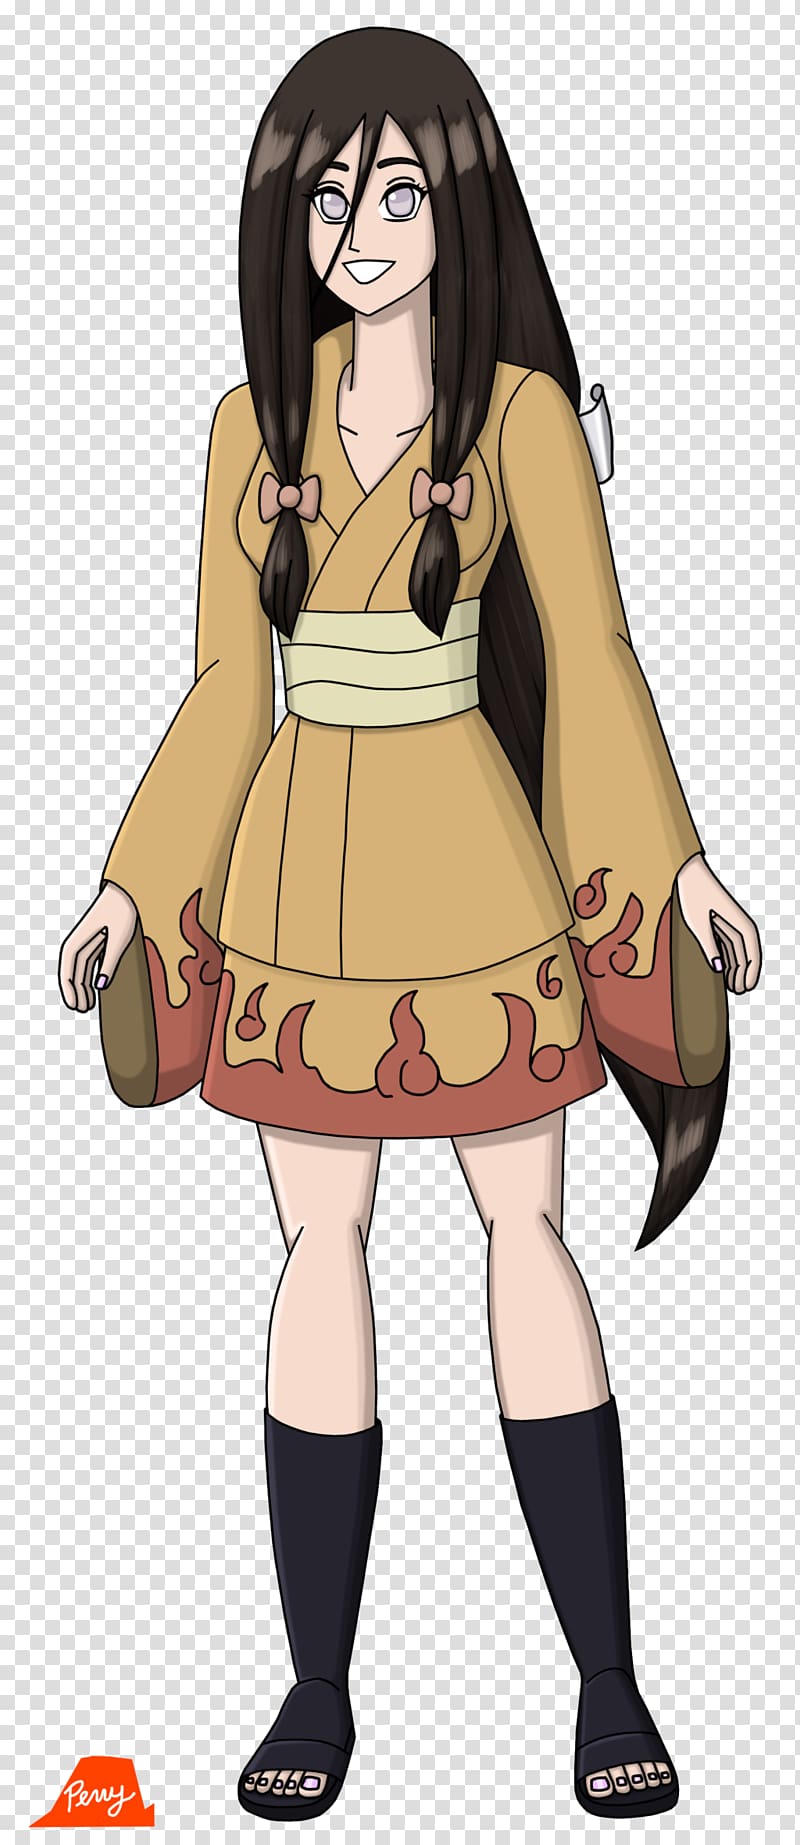 Hinata Hyuga Boruto: Naruto the Movie Naruto Uzumaki Hyuga clan, naruto transparent background PNG clipart